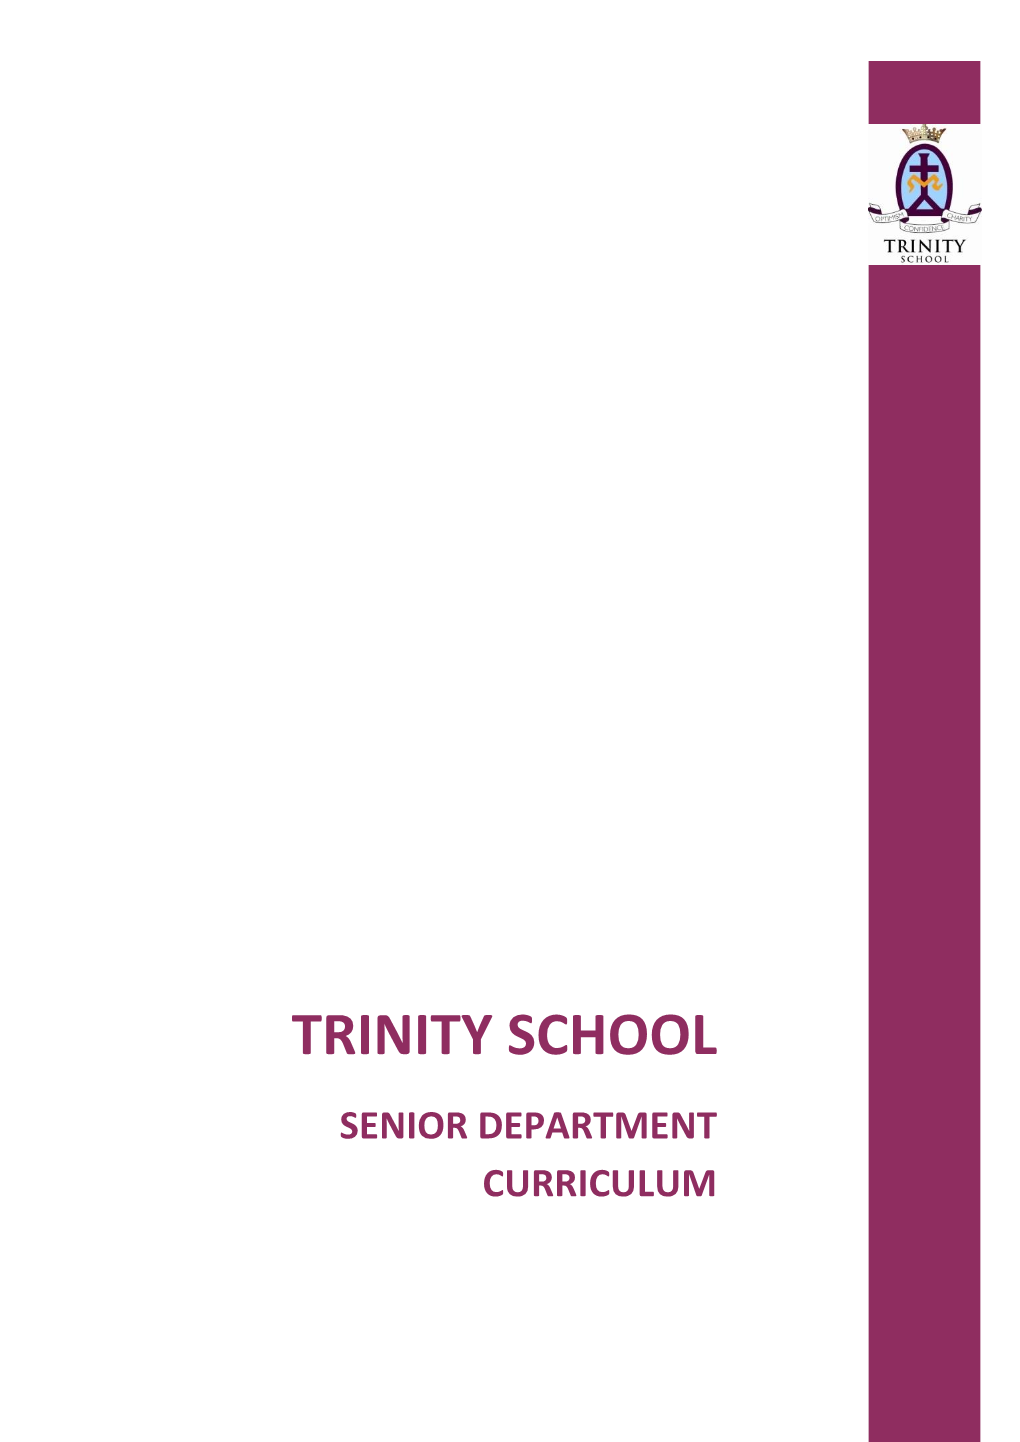 Senior Department Curriculum 2019-20